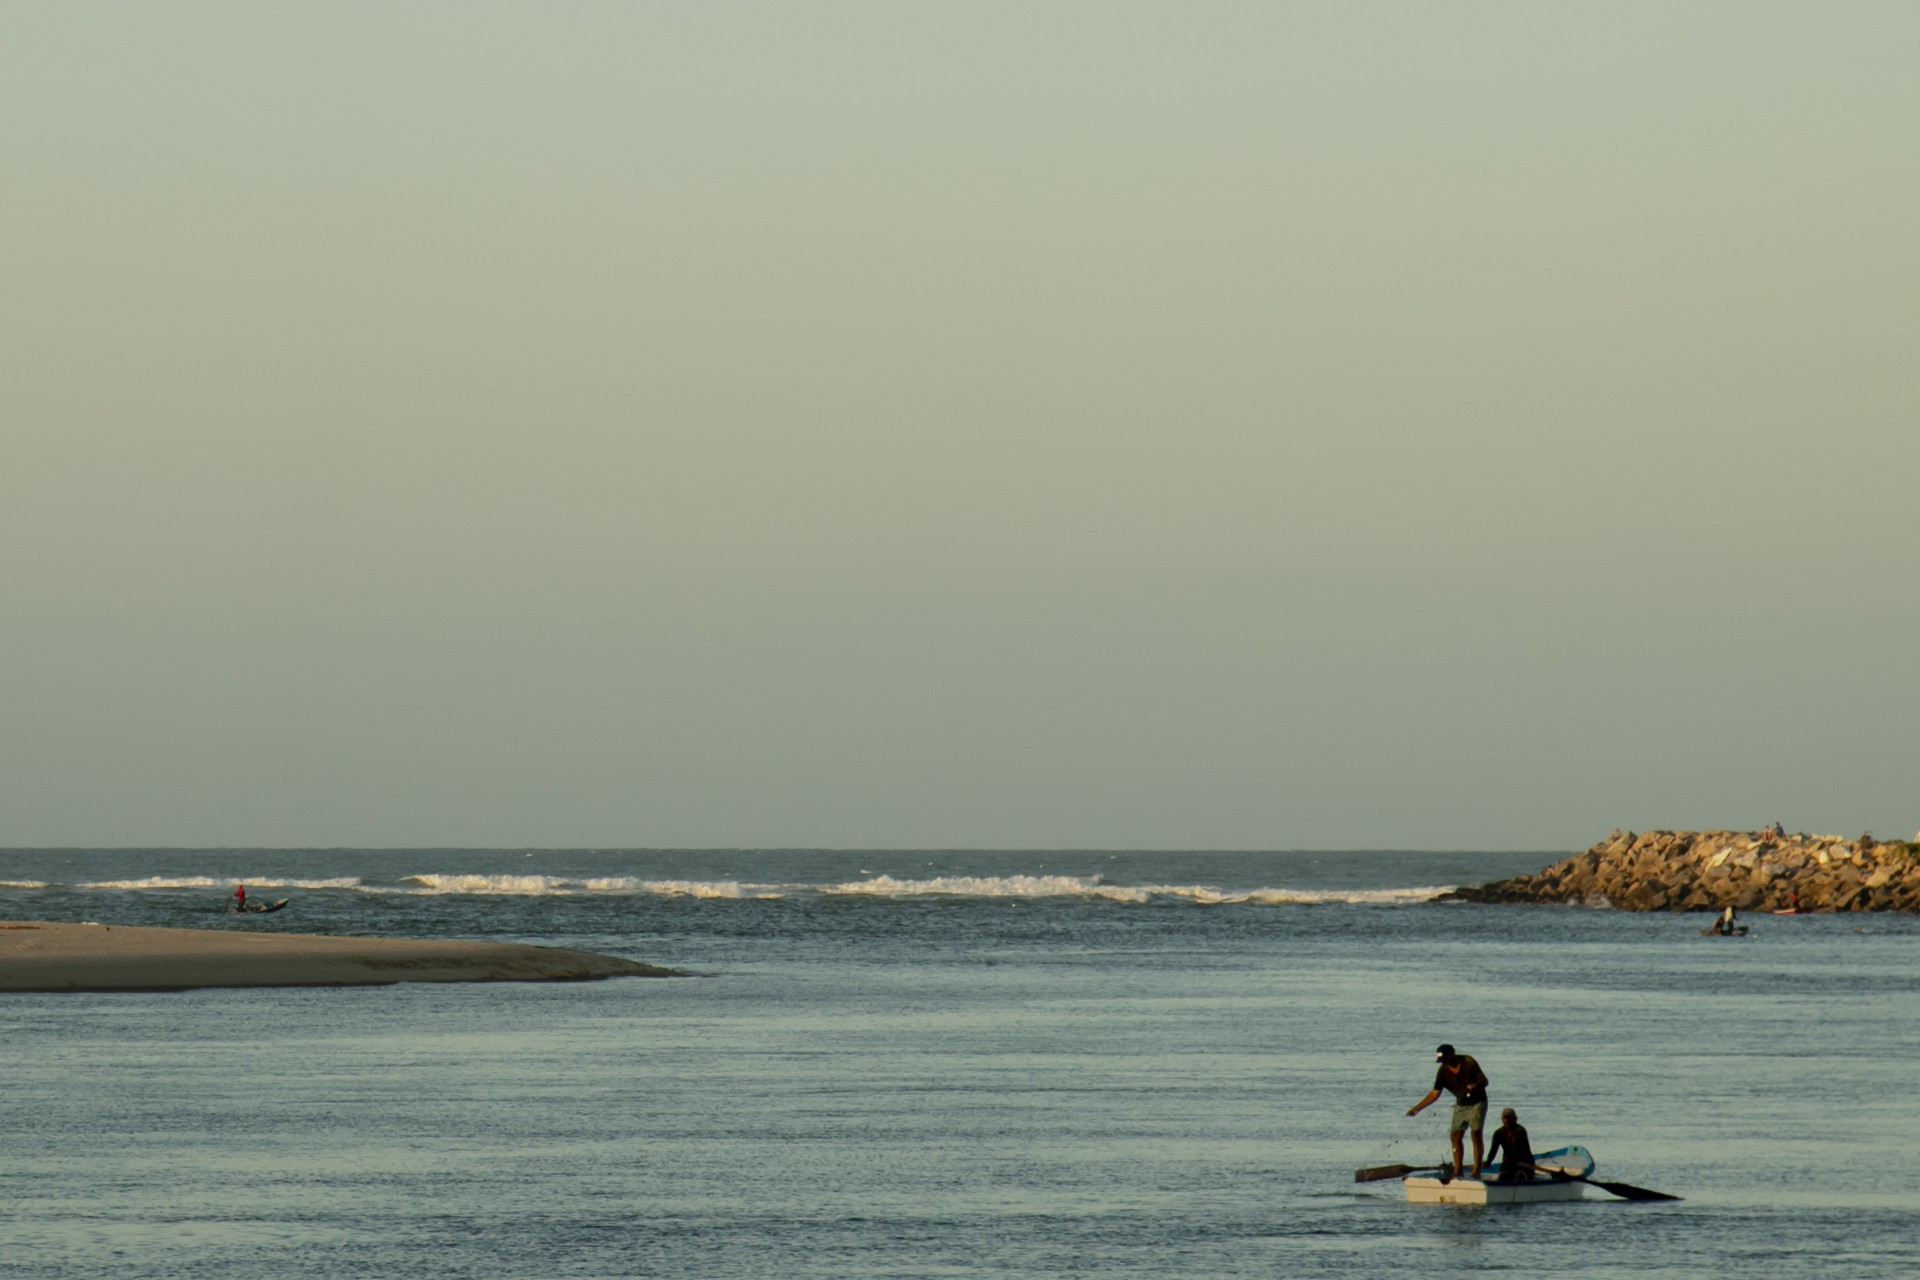 Primeiras turbinas eólicas offshore do projeto Caucaia Bi Energia serão instaladas a 6 km a oeste da foz do Rio Ceará, em frente à praia do Pacheco. Na imagem, foz do rio Ceará(Foto: Aurelio Alves)